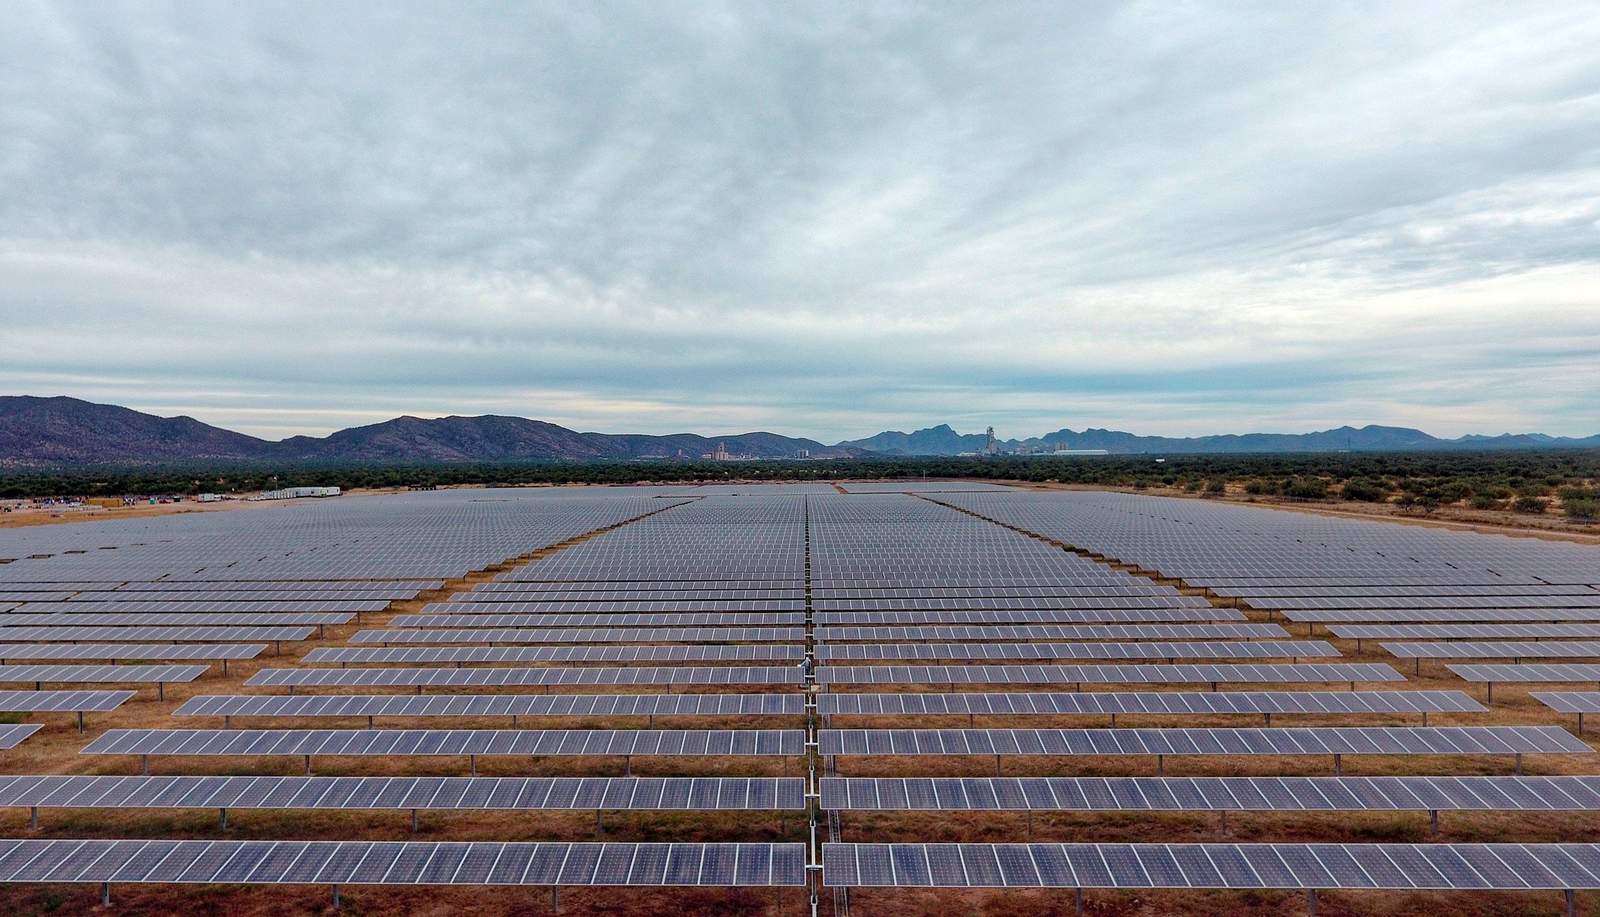 Con 305 hectáreas que se convierten en un horizonte sin fin de paneles, Iberdrola abre este diciembre su primer parque solar en México, con una capacidad instalada de 100 megavatios (Mw), equivalente a suministrar electricidad a 100,000 hogares. (EFE)